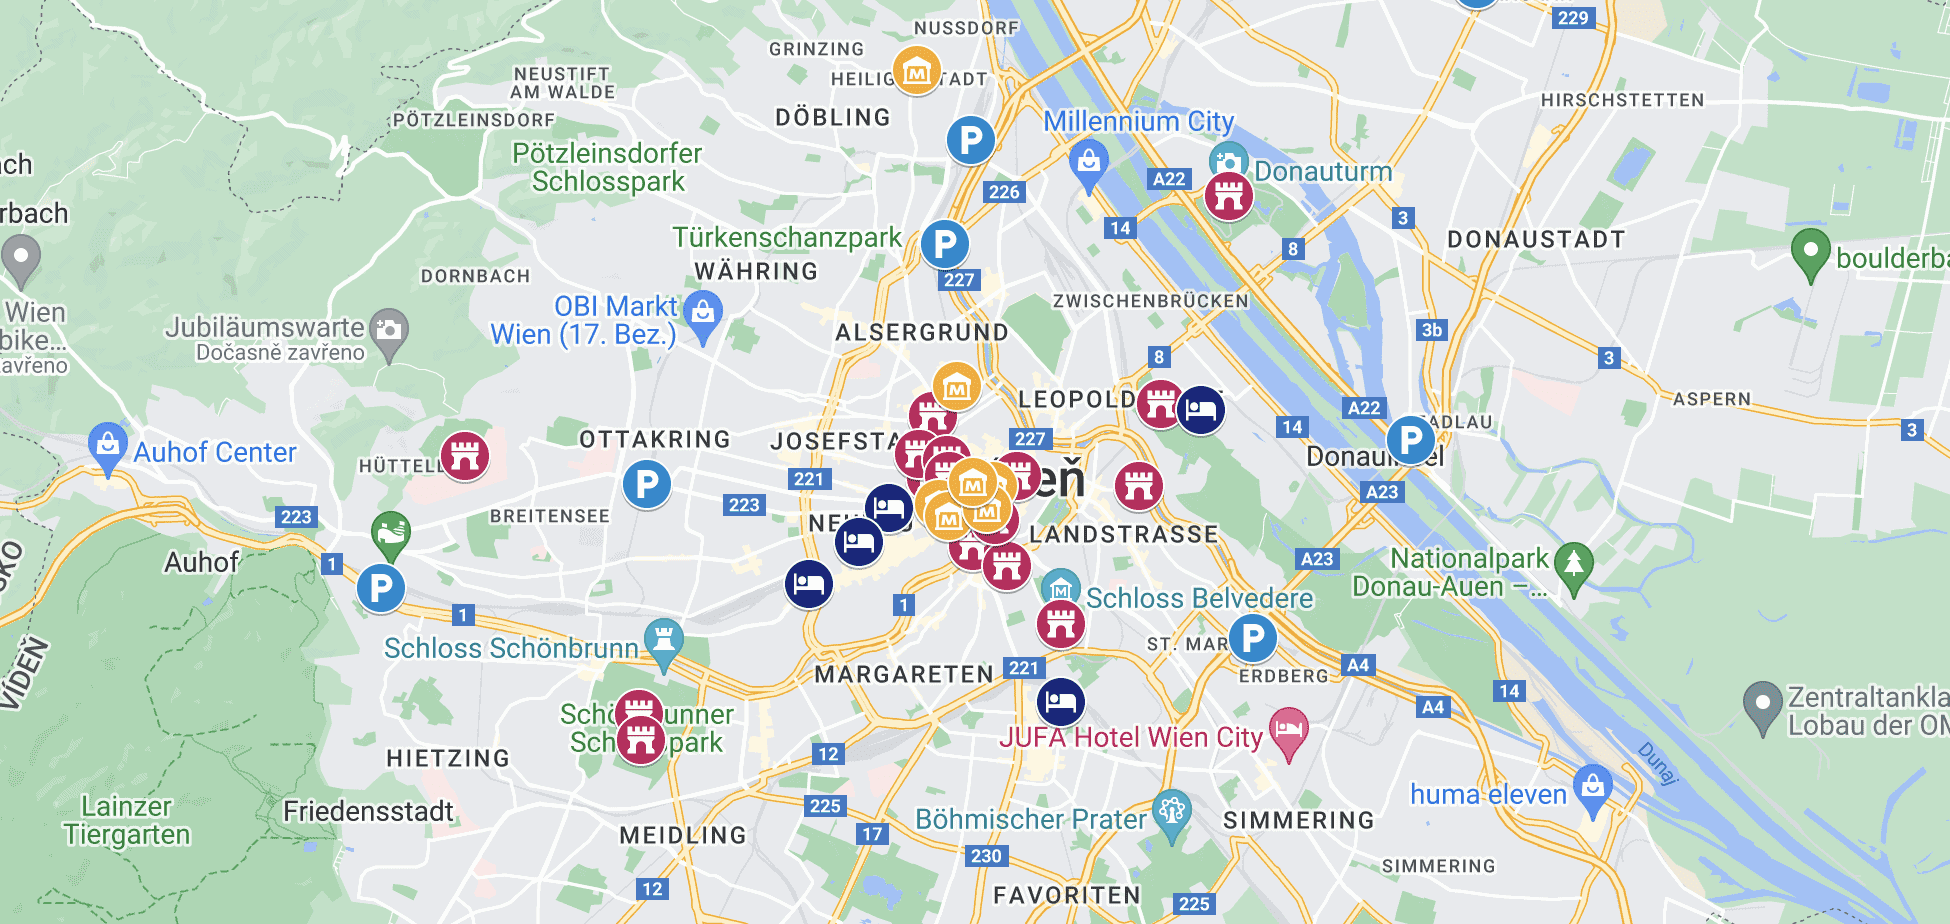 Pobierz mapę Wiednia